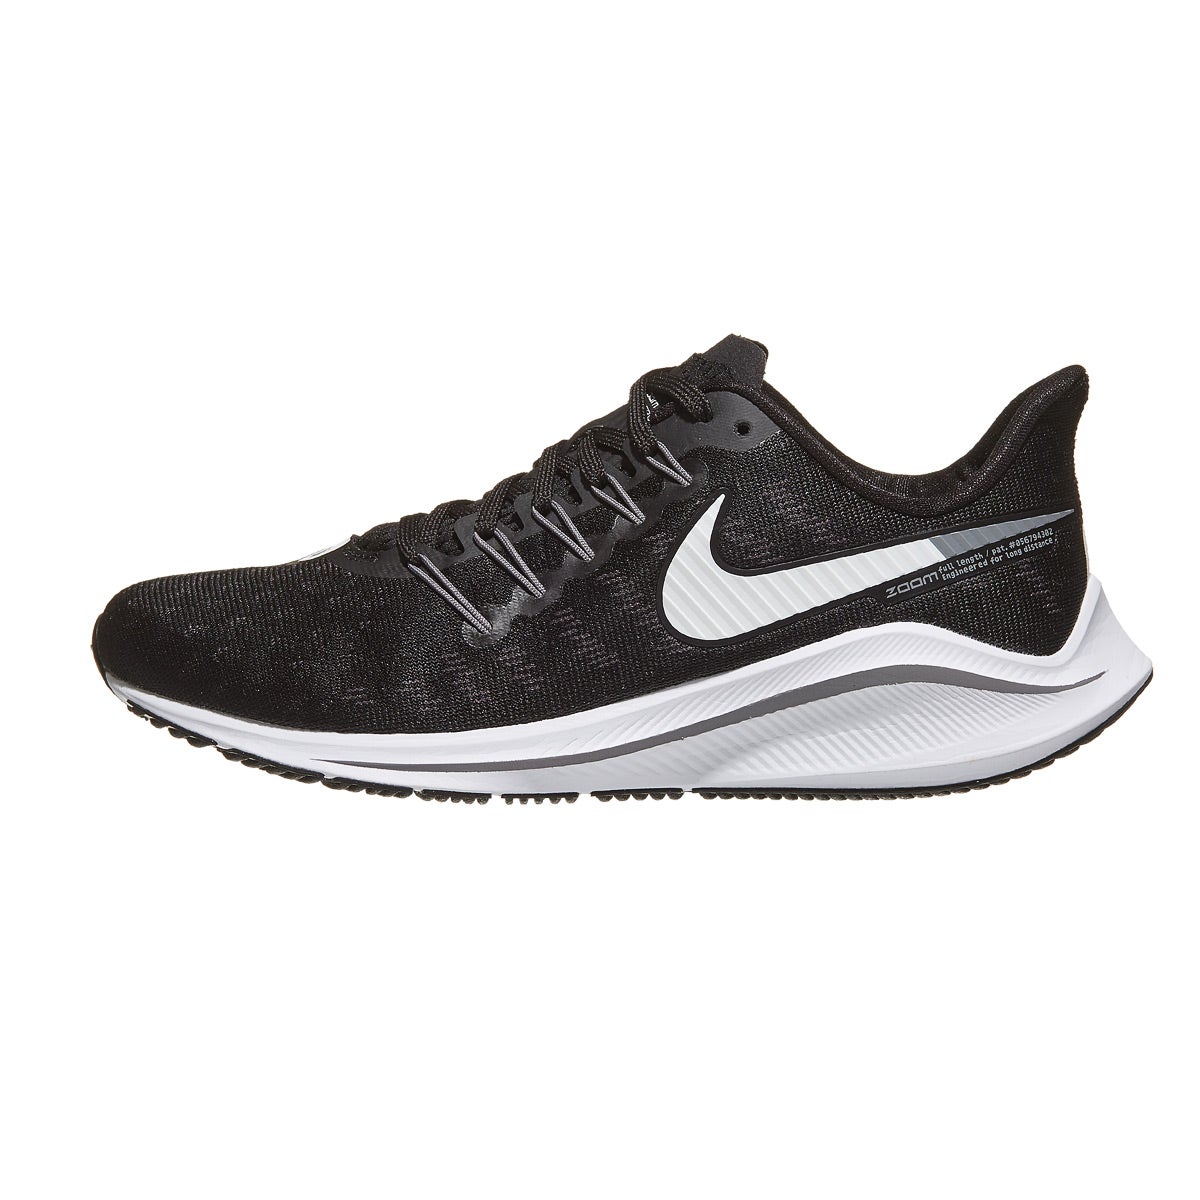 Nike Zoom Vomero 14 Women's Shoes Black/White/Grey 360° View | Running ...